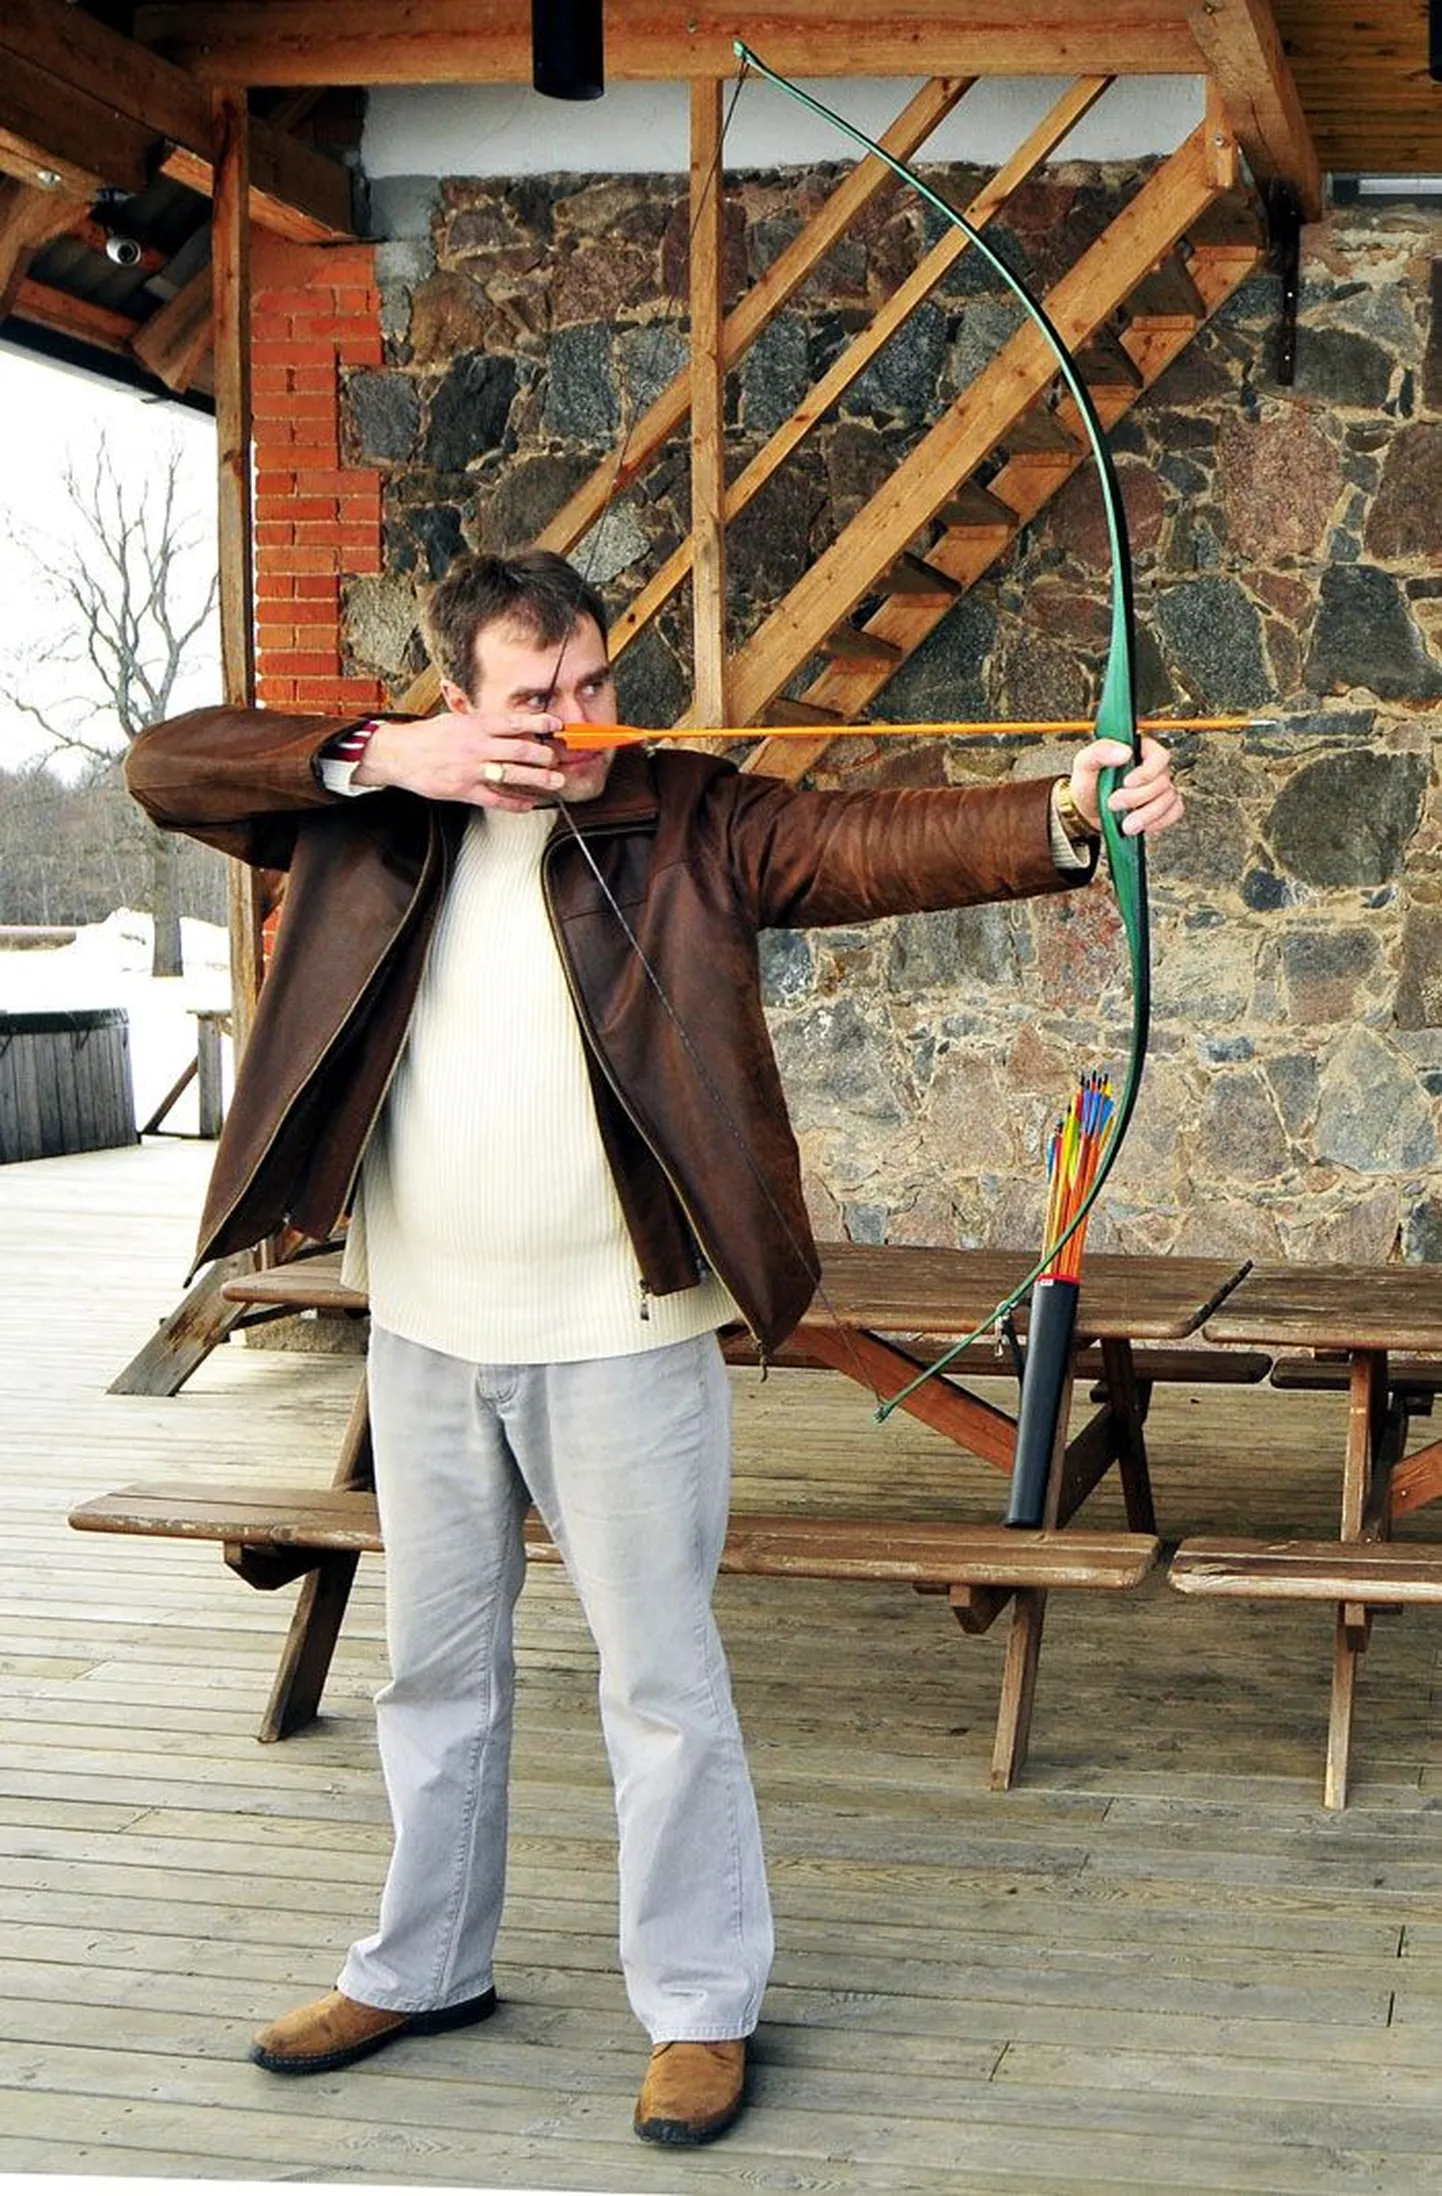 Aksel Kivi õpetas oma puhkekeskuses vibu laskma ja tõmbas vahel ka ise vibu vinna. See pilt on tehtud  ajal, mil talle kuuluv OÜ Kivi Forellipüük käis PRIAga kohut 2005. aastal rajatud vähitiikide pärast.